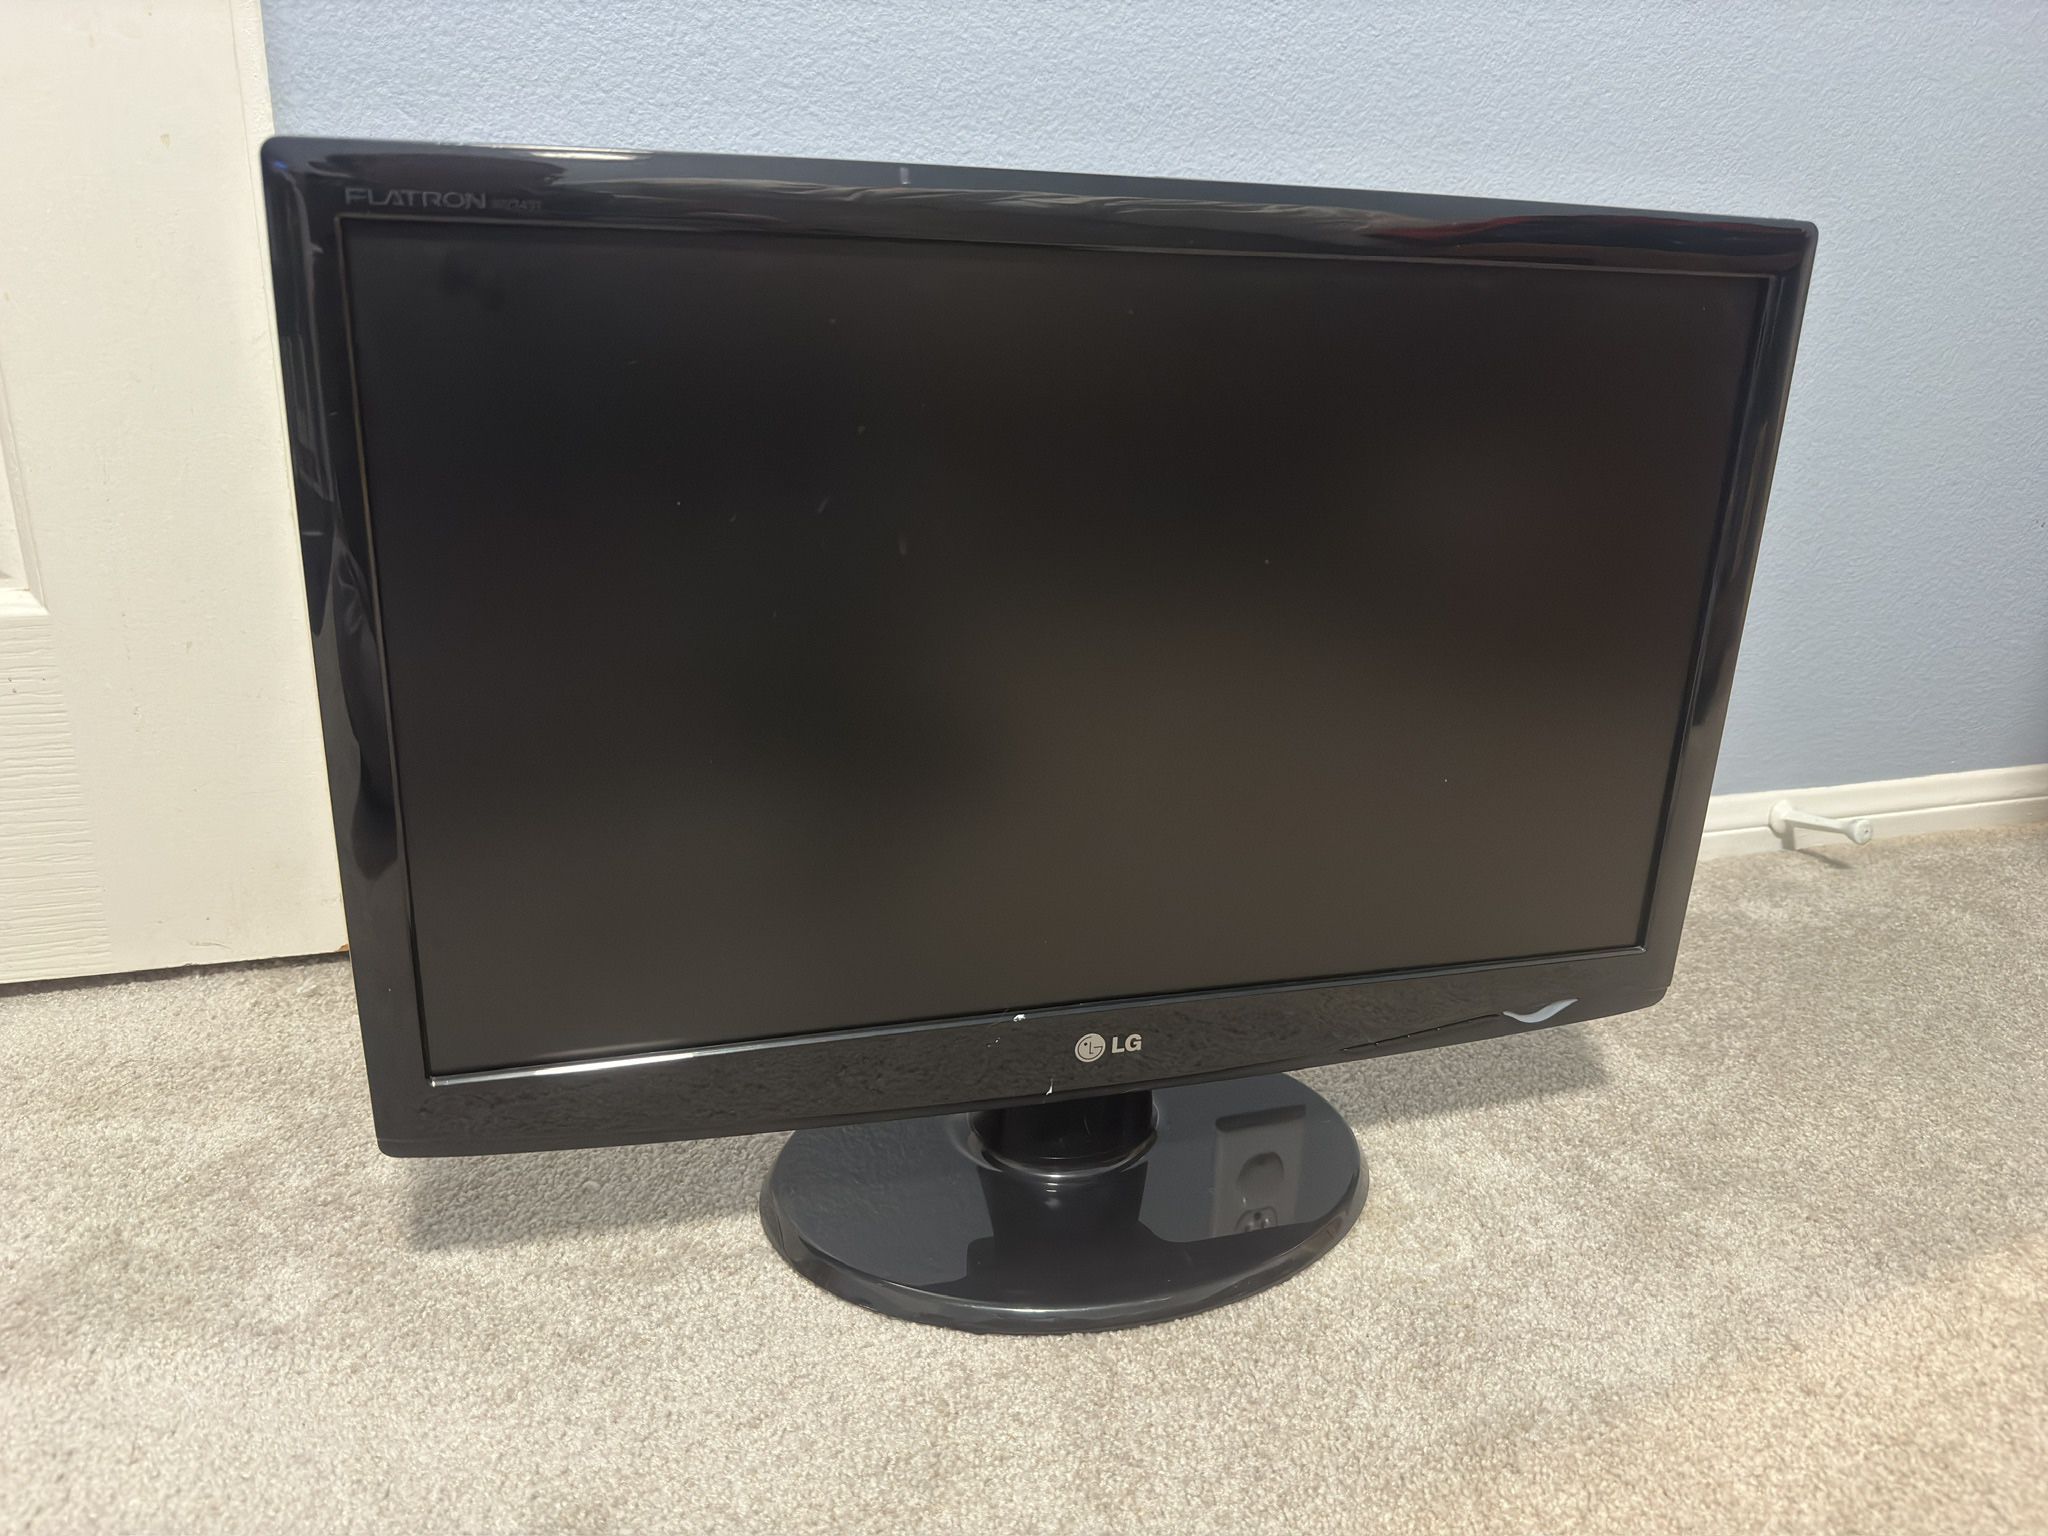 LG W2343T 23" LCD Monitor